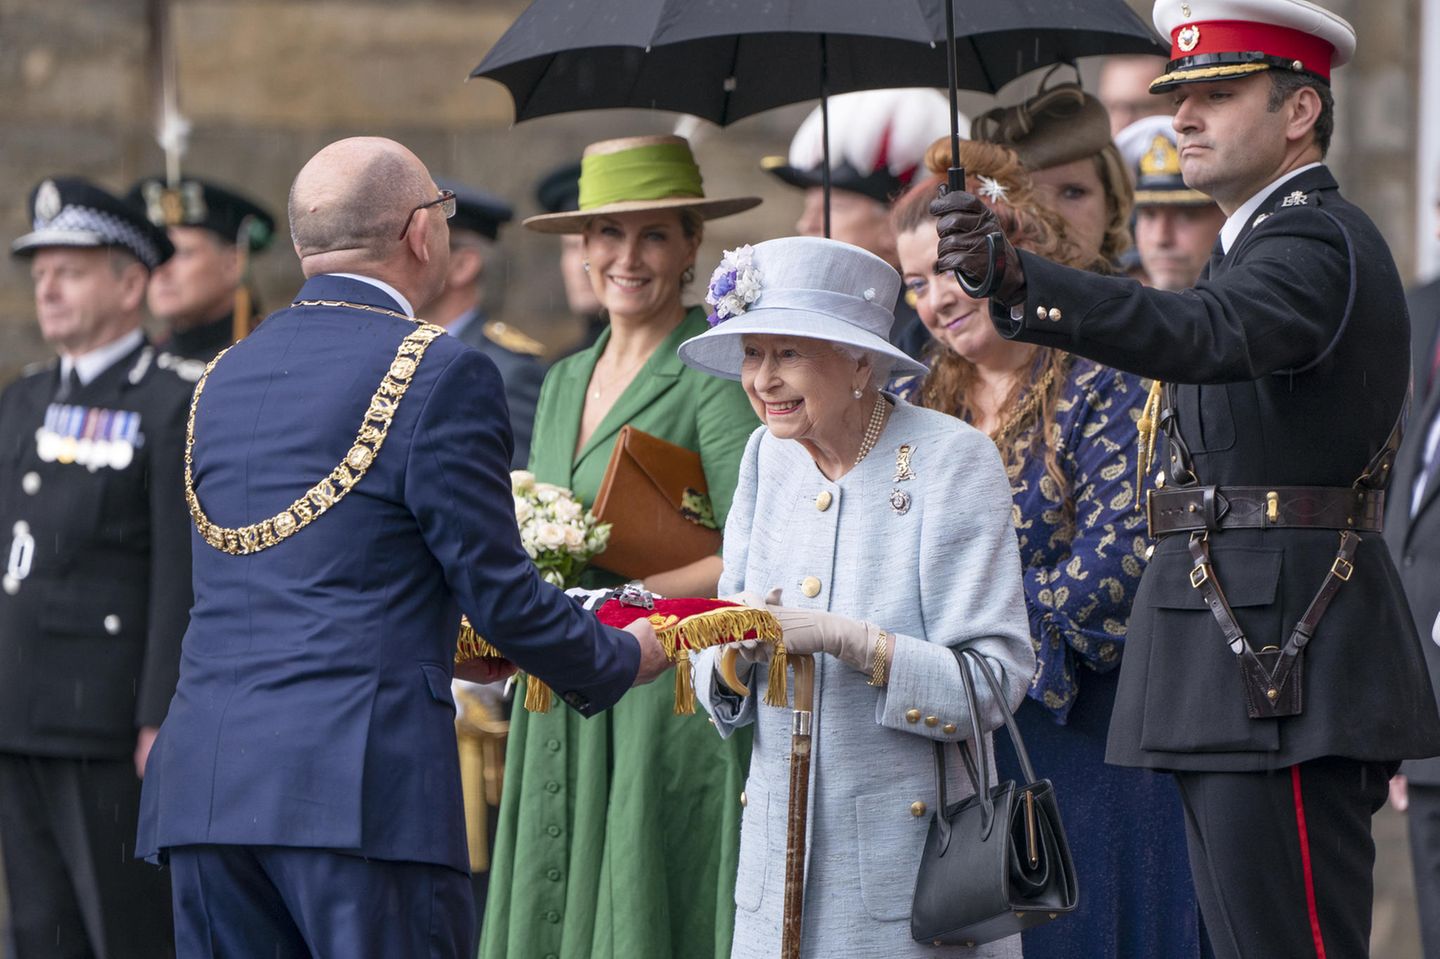 Queen Elizabeth inspiziert die von Lord Provost Robert Aldridge (links) überreichten Schlüssel während der Schlüsselübergabe auf dem Vorplatz des Palace of Holyroodhouse in Edinburgh am 27. Juni 2022.